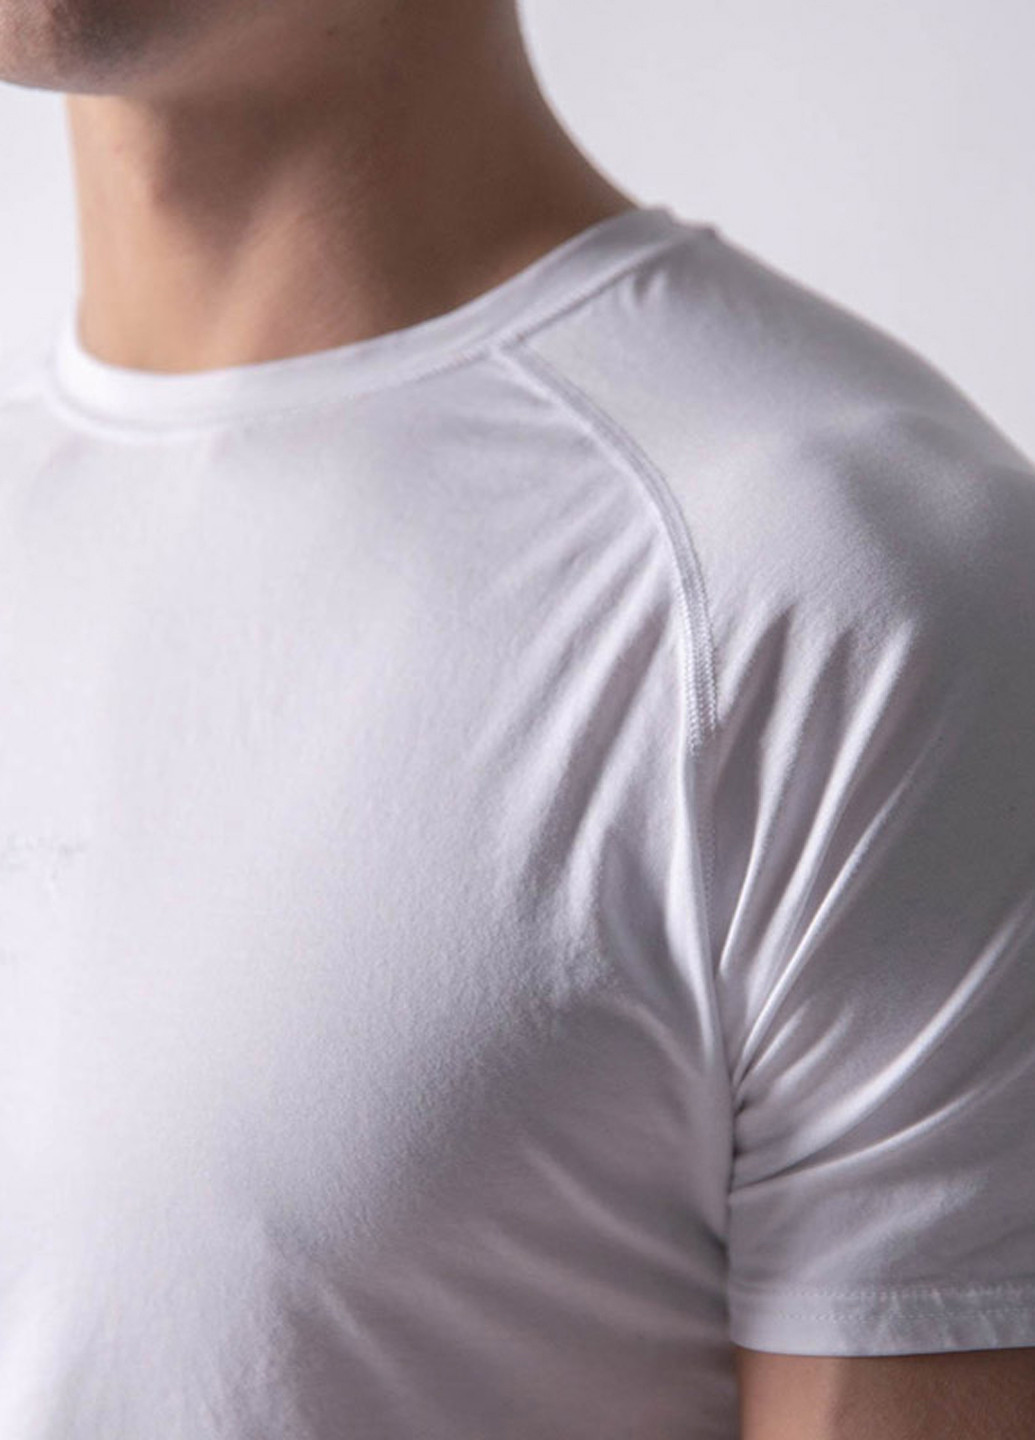 Біла футболка пауерліфтинг з коротким рукавом Lyft